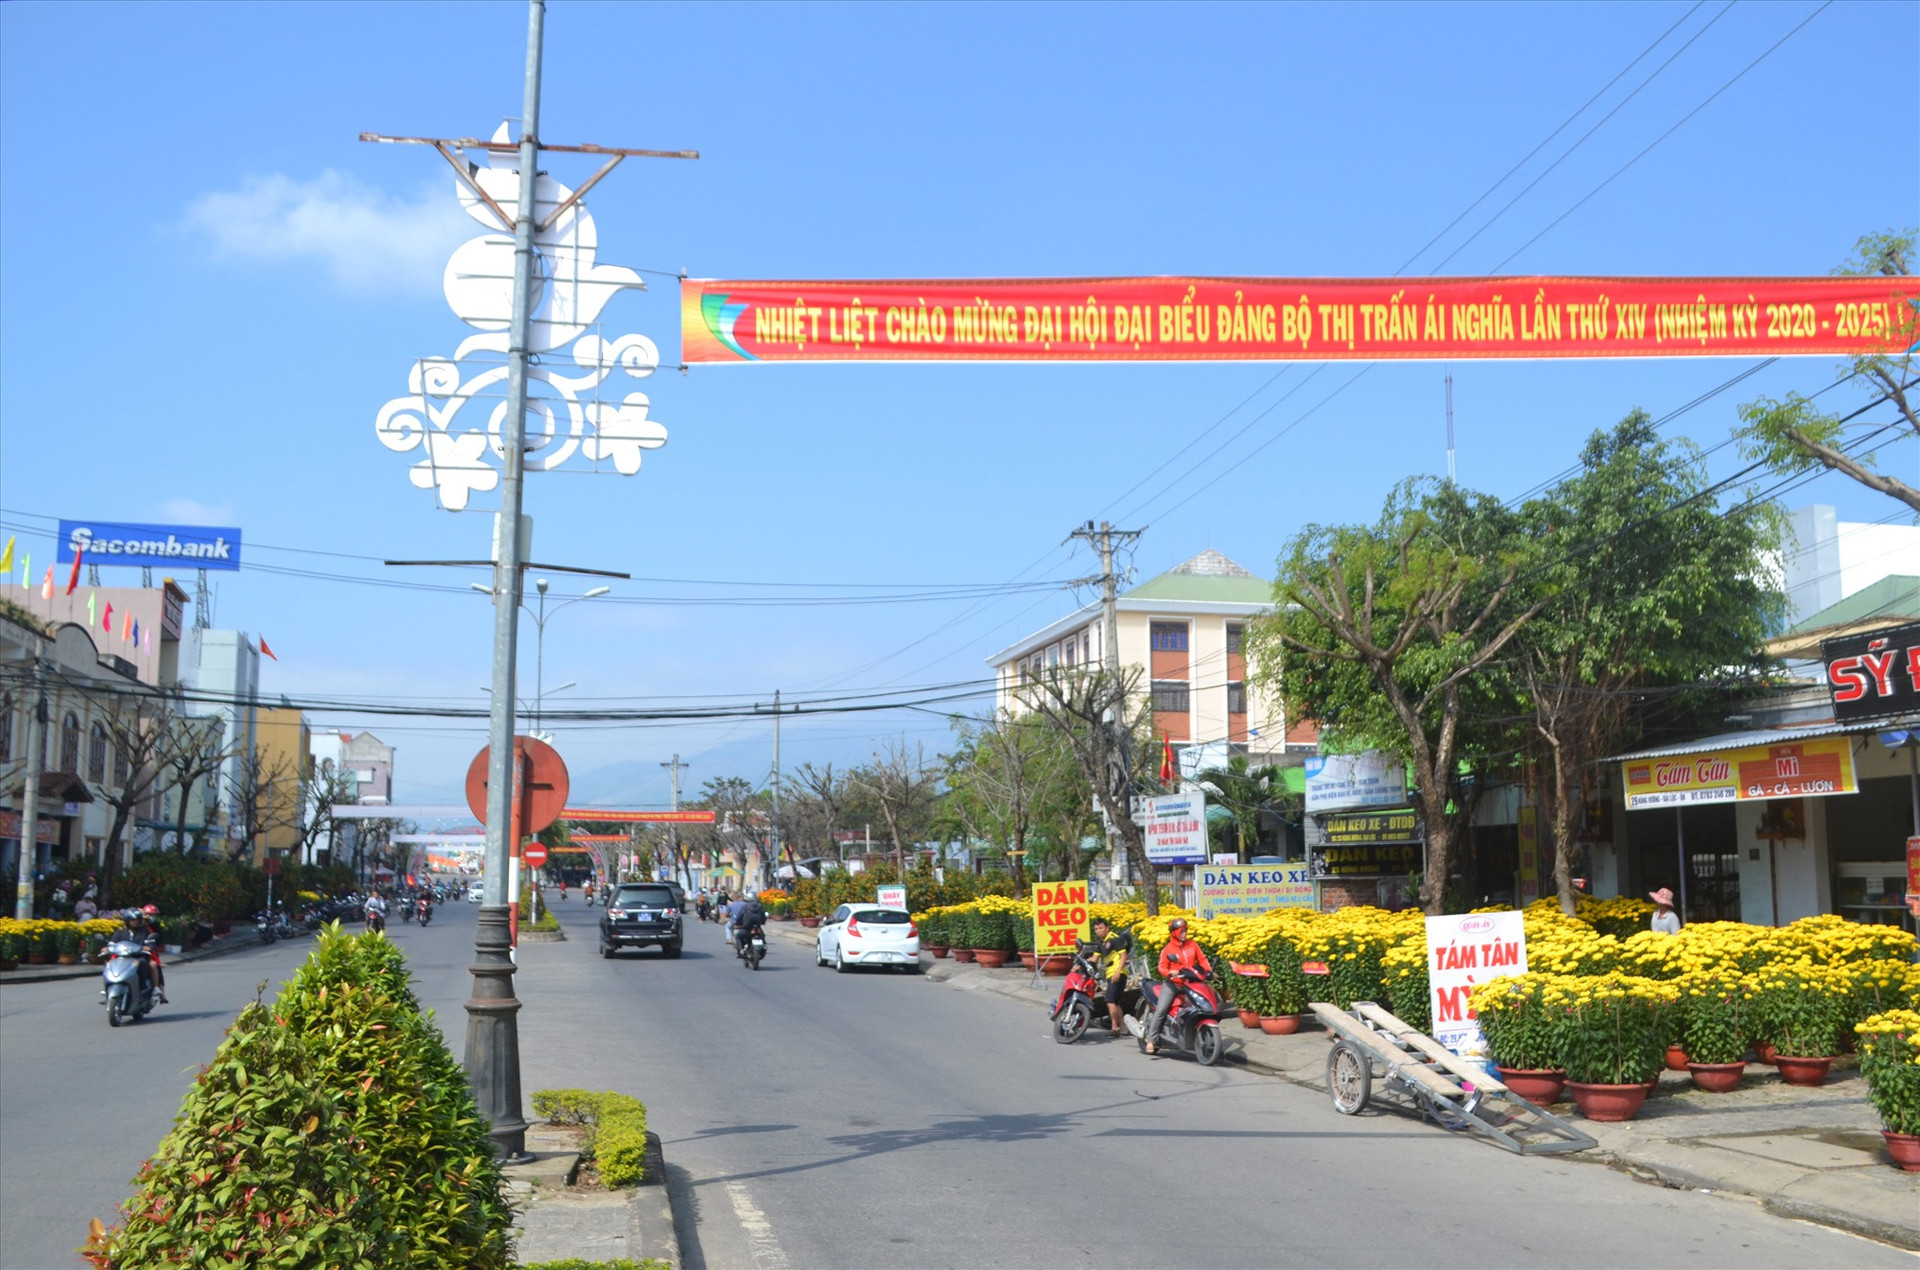 Tuyên truyền trực quan về đại hội đảng các cấp trên trục đường chính qua trung tâm huyện Đại Lộc. Ảnh: CT